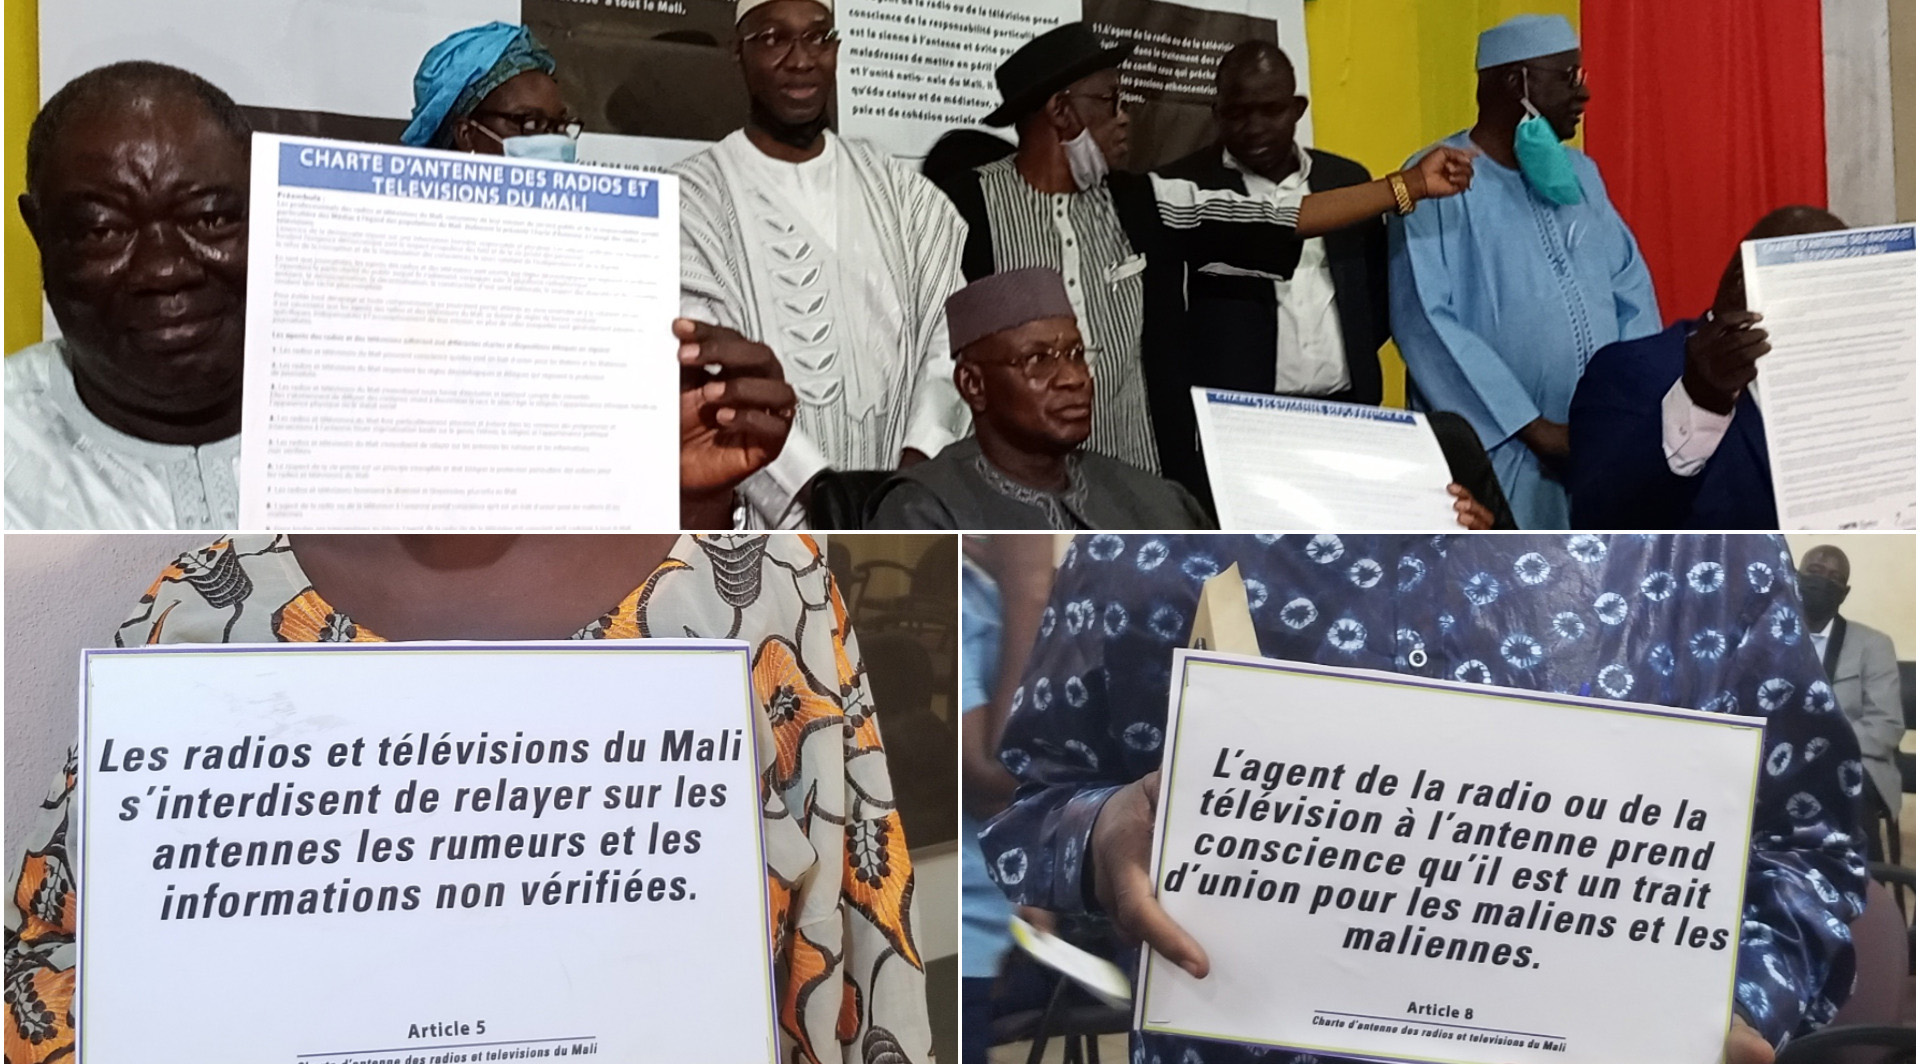 Eine Rundfunk-Charta für Frieden und sozialen Zusammenhalt in Mali